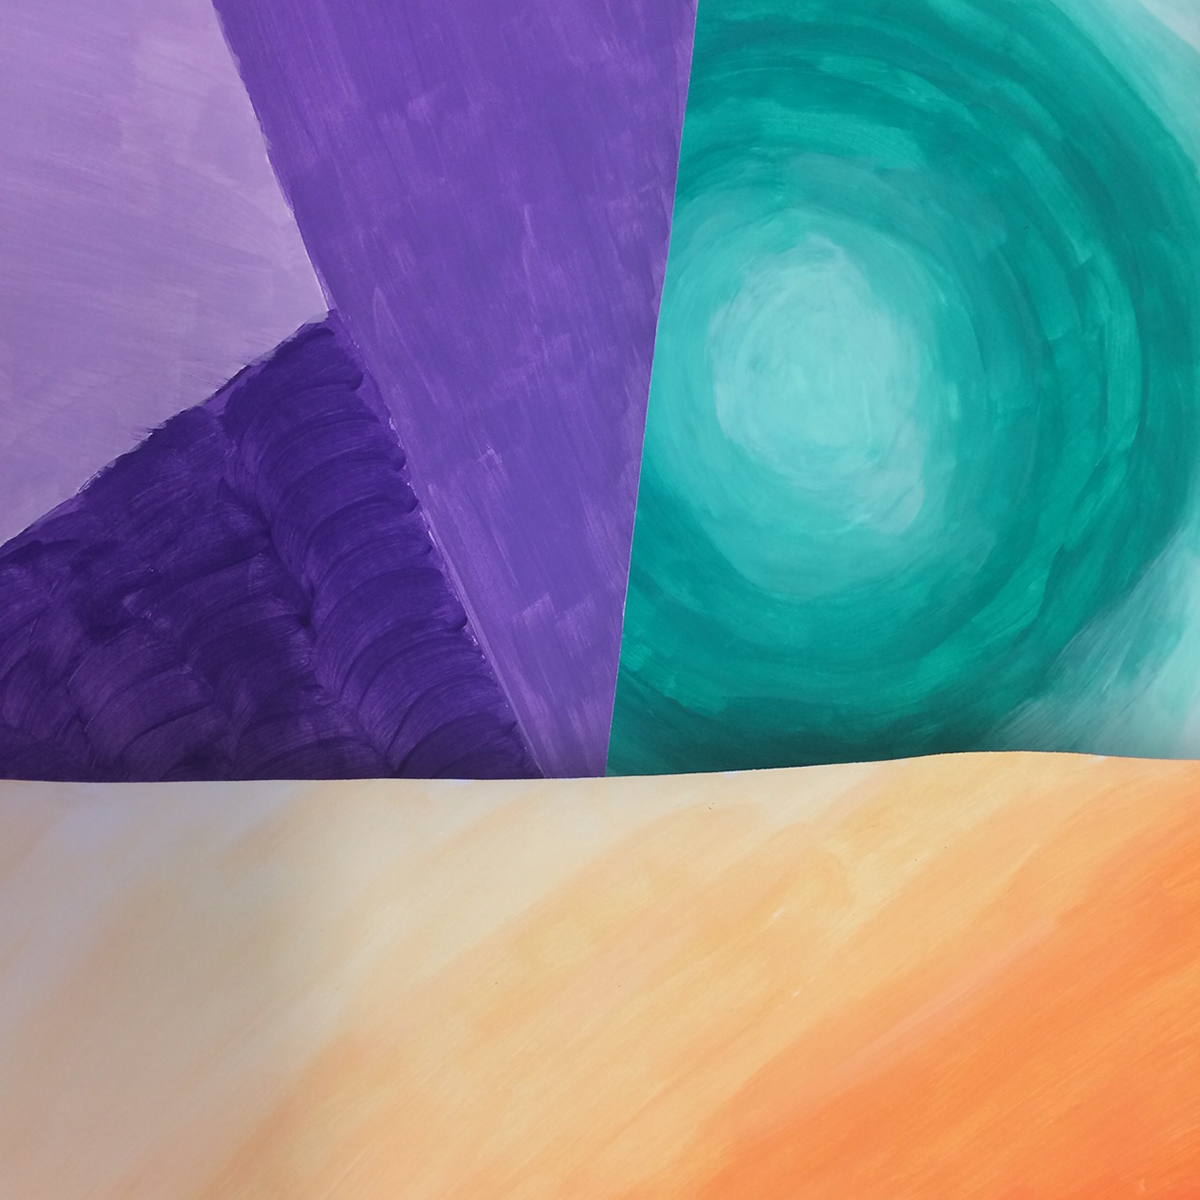 Abstrakt målning med fält i turkost, lila och orange.